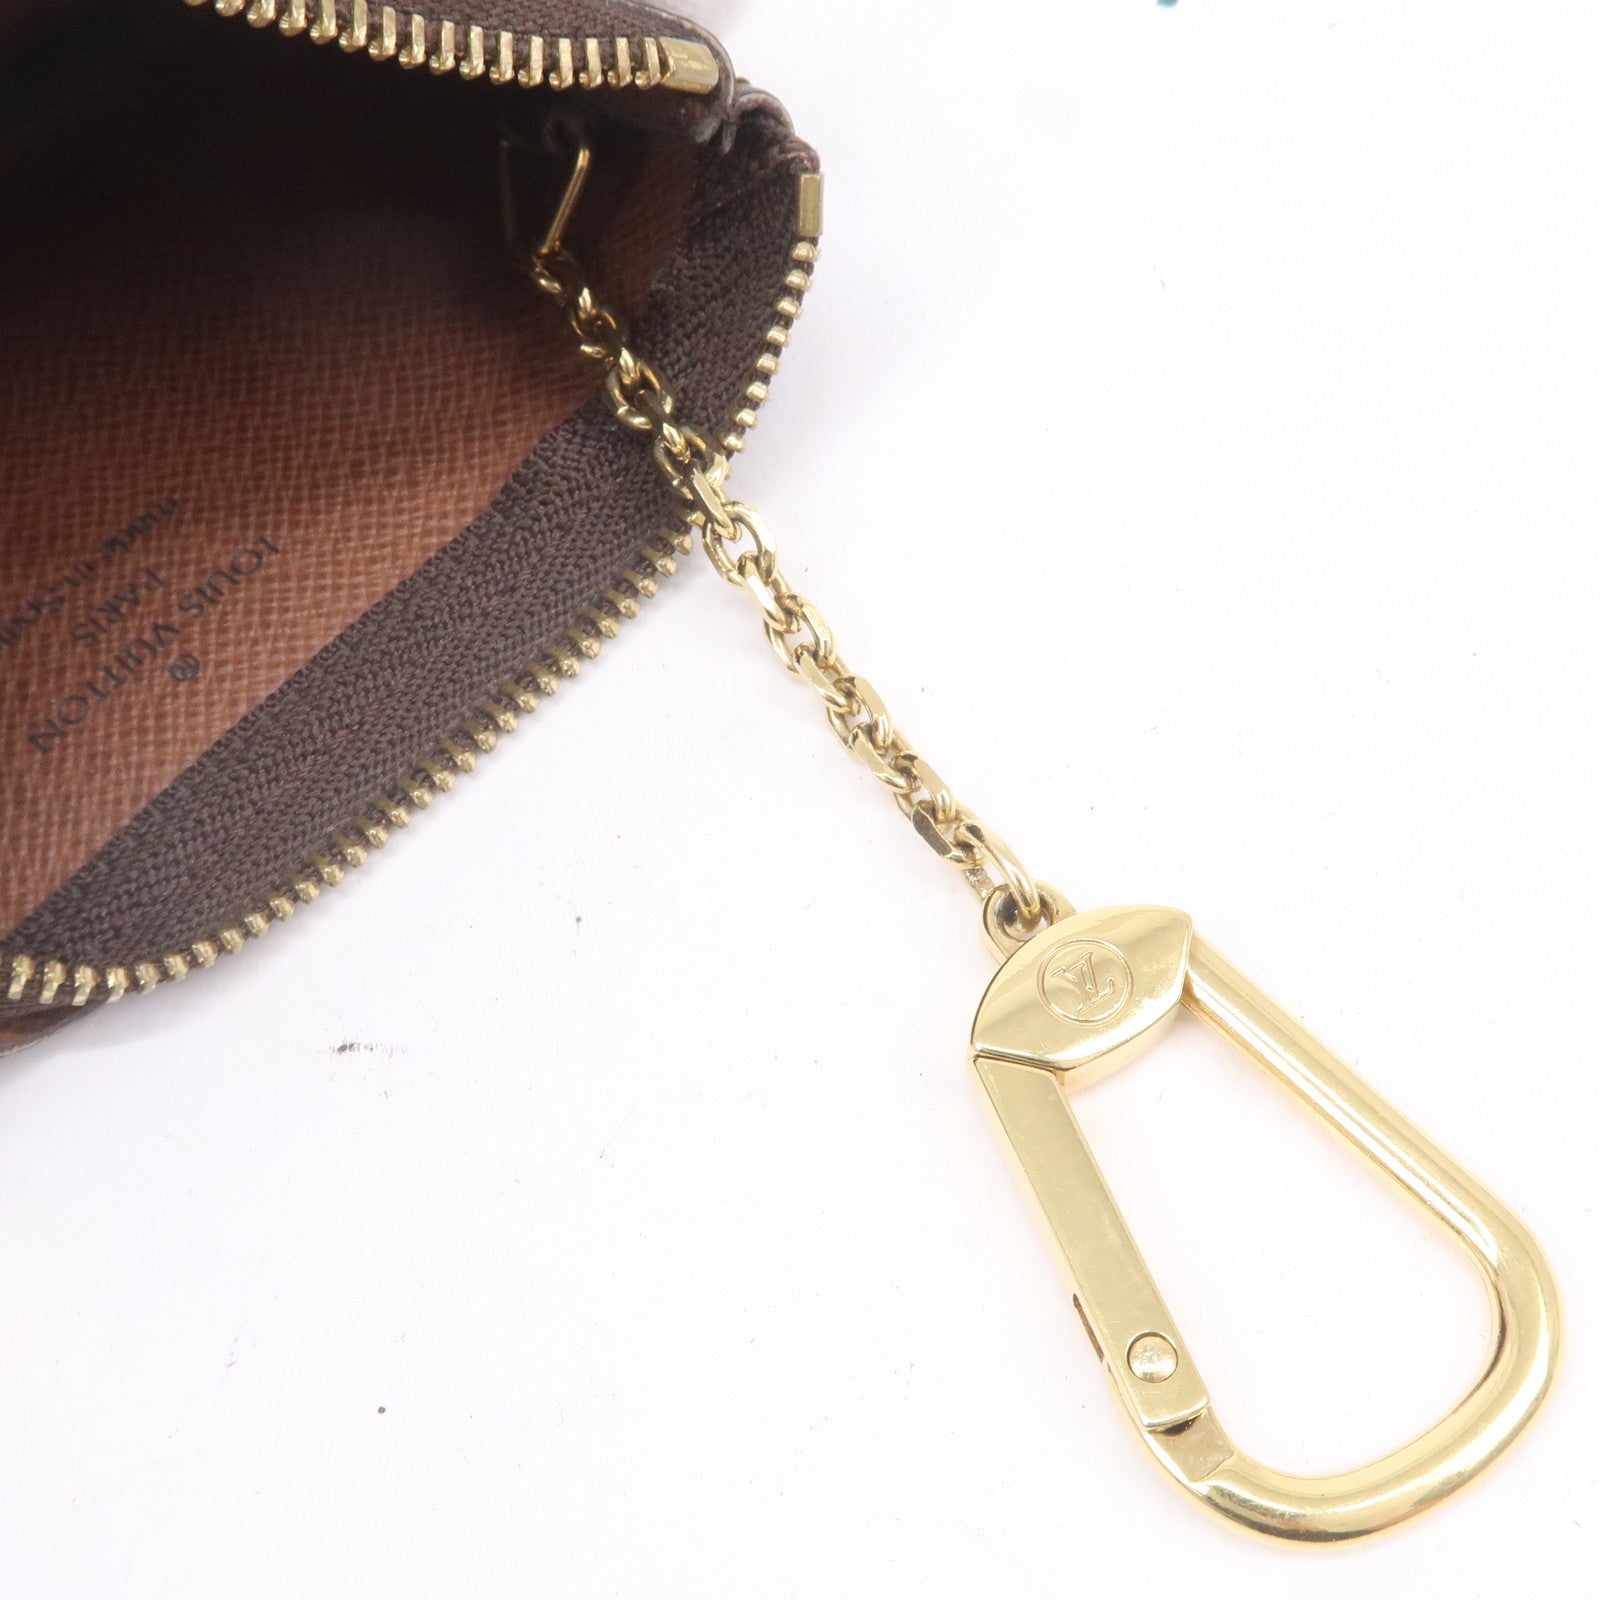 Louis Vuitton key chain pouch real VS fake